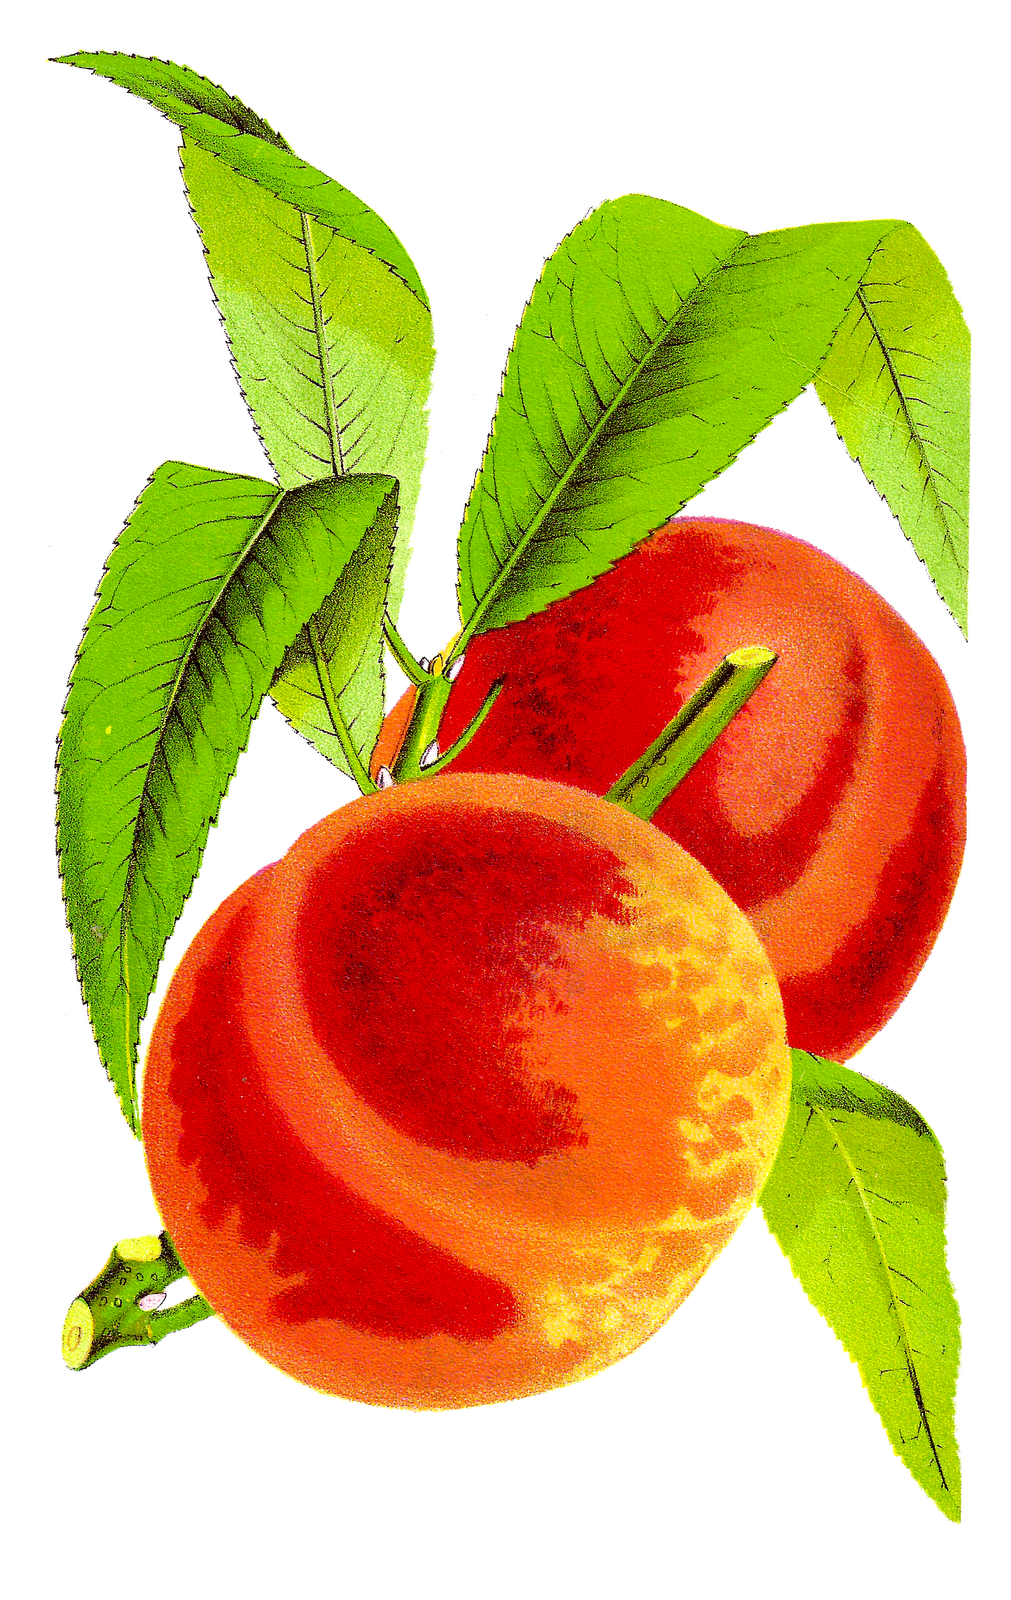 Peaches peach seed